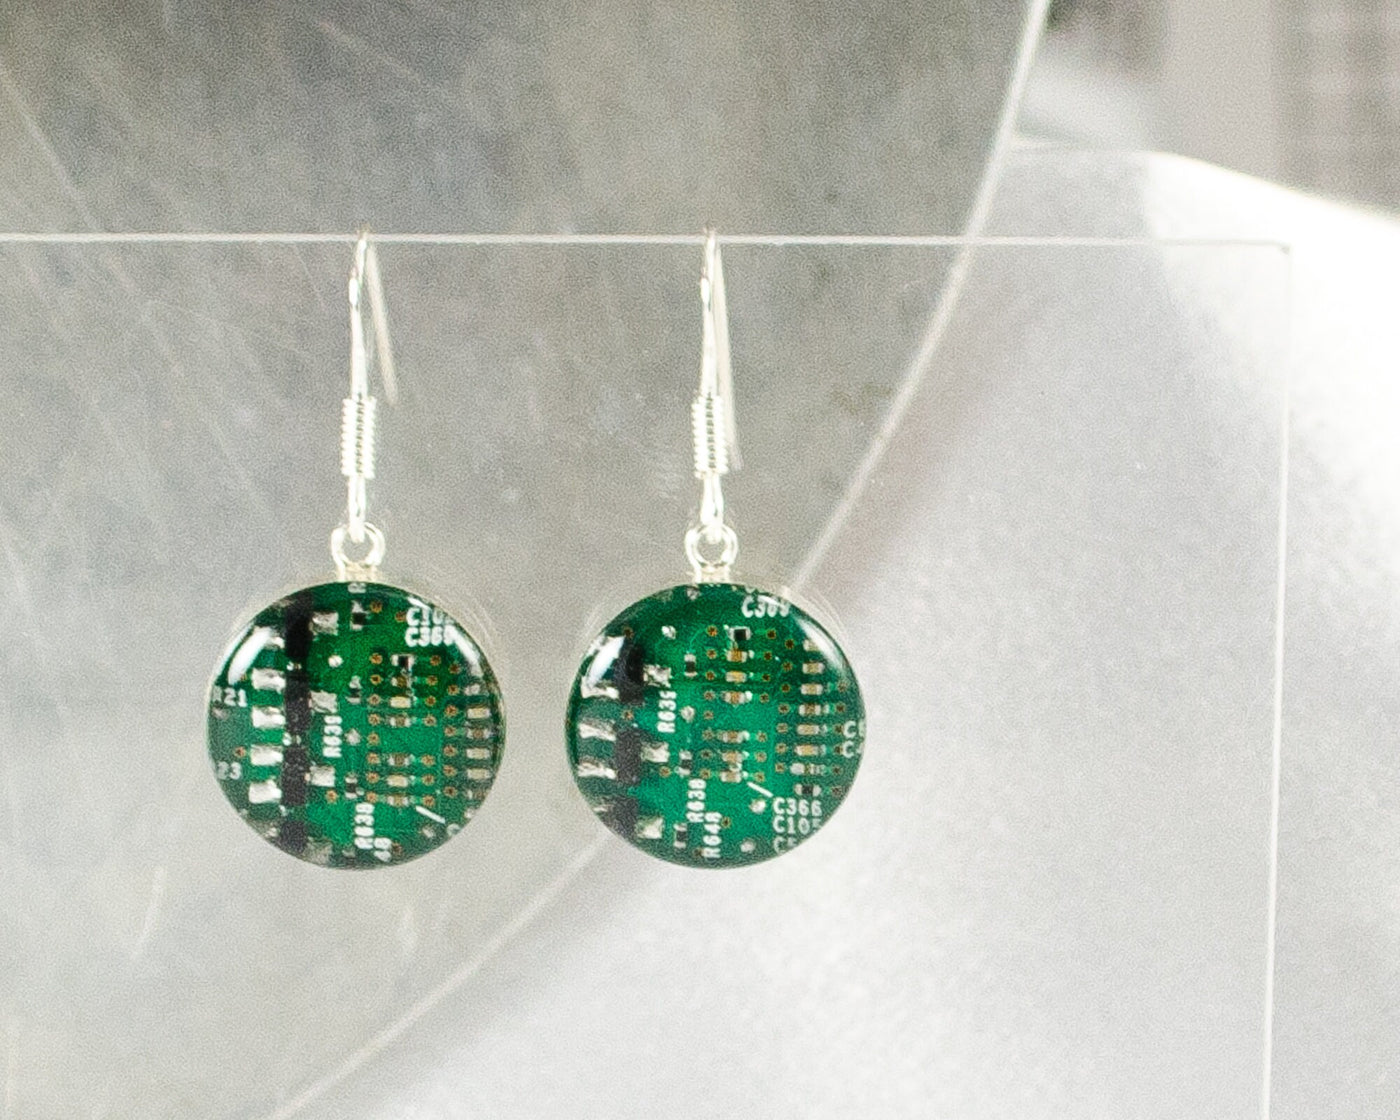 Circuit Board Earrings, Green Sterling Silver Jewelry, Green Dangle Earrings, Industrial Chic, Women in Computing, Wearable Technology